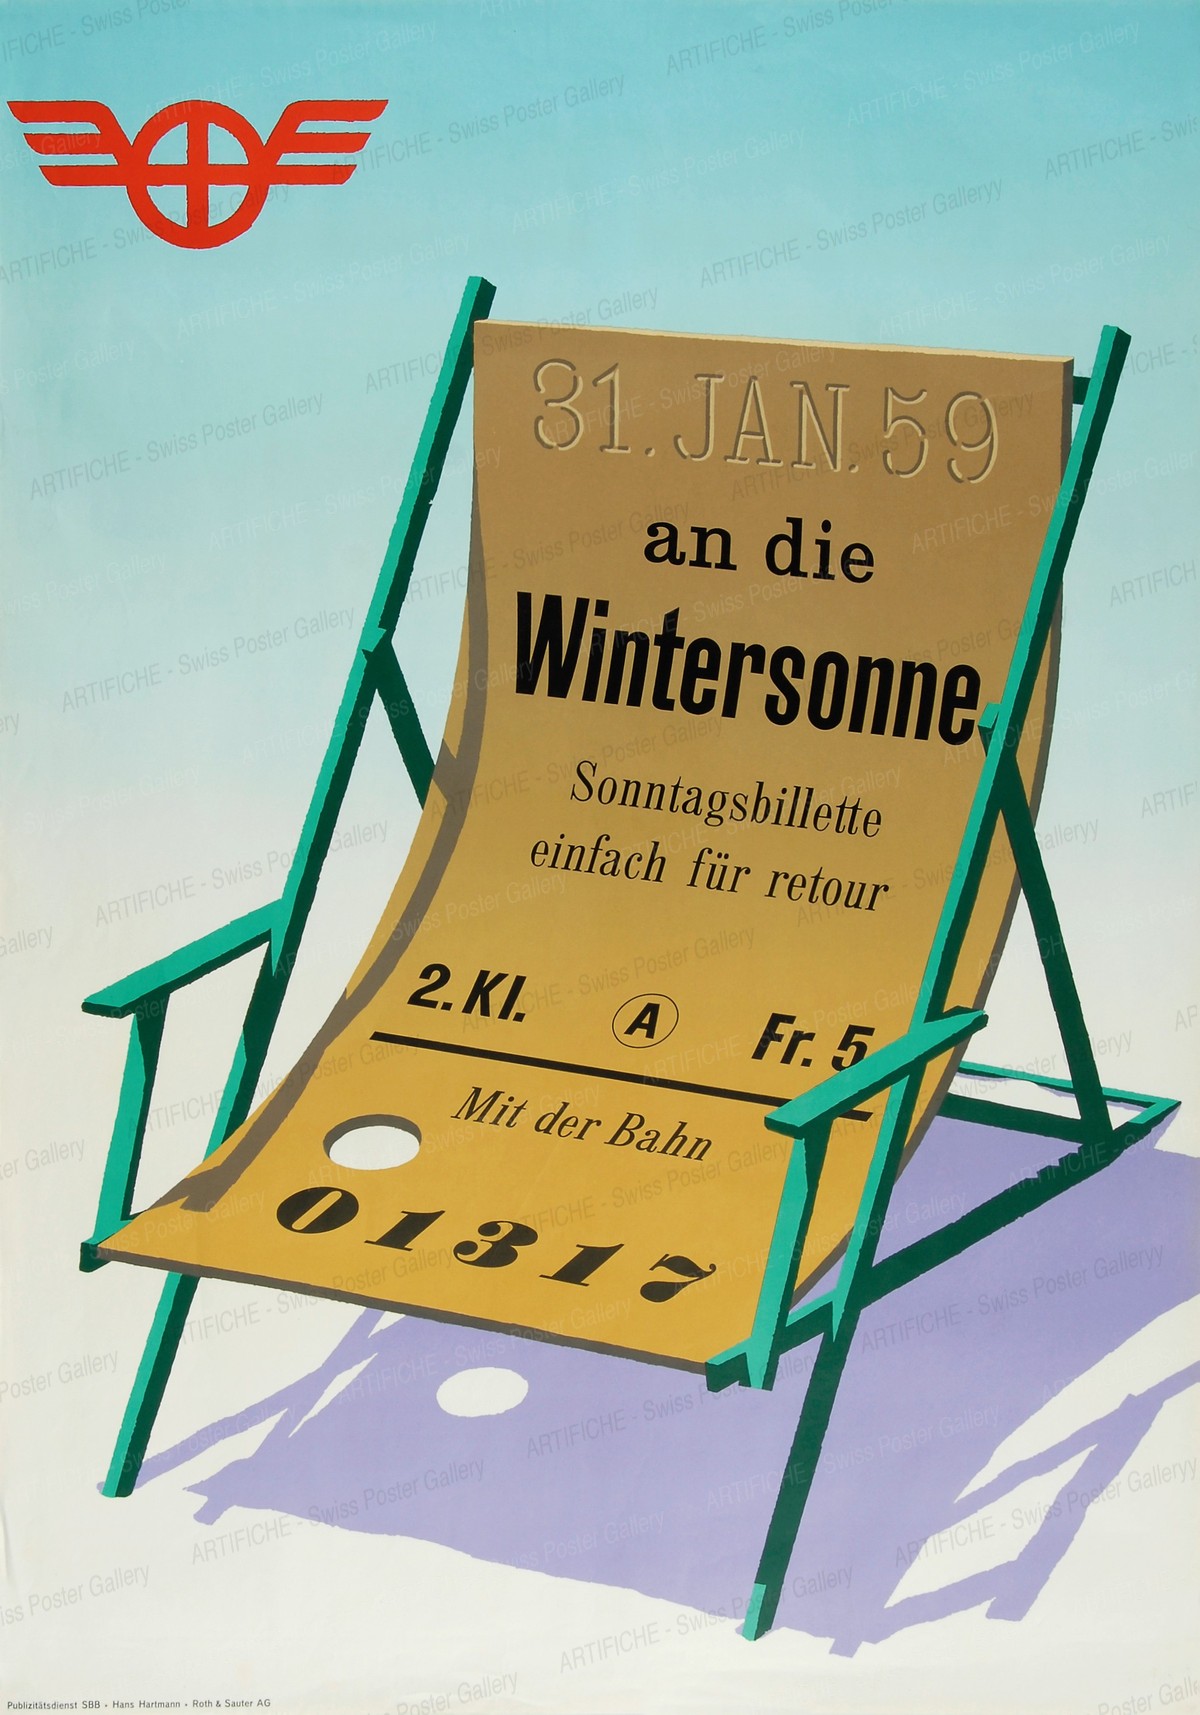 31. Jan. 59 – An die Wintersonne mit der Bahn, Hans Hartmann